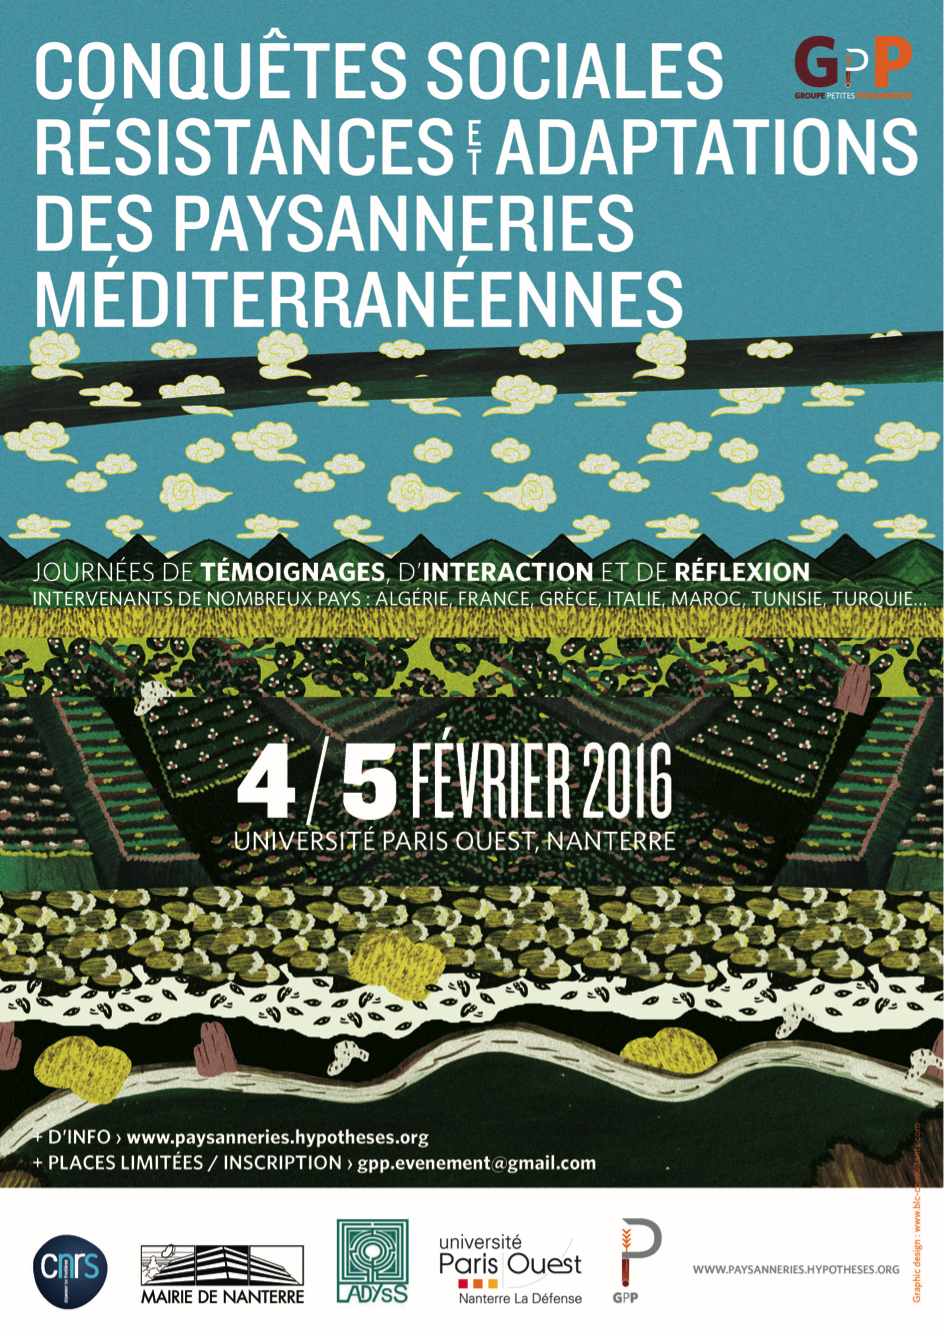 “Conquêtes sociales, résistances et adaptations des paysanneries du pourtour méditerranéen” du 4 au 5 Février 2016 à Nanterre